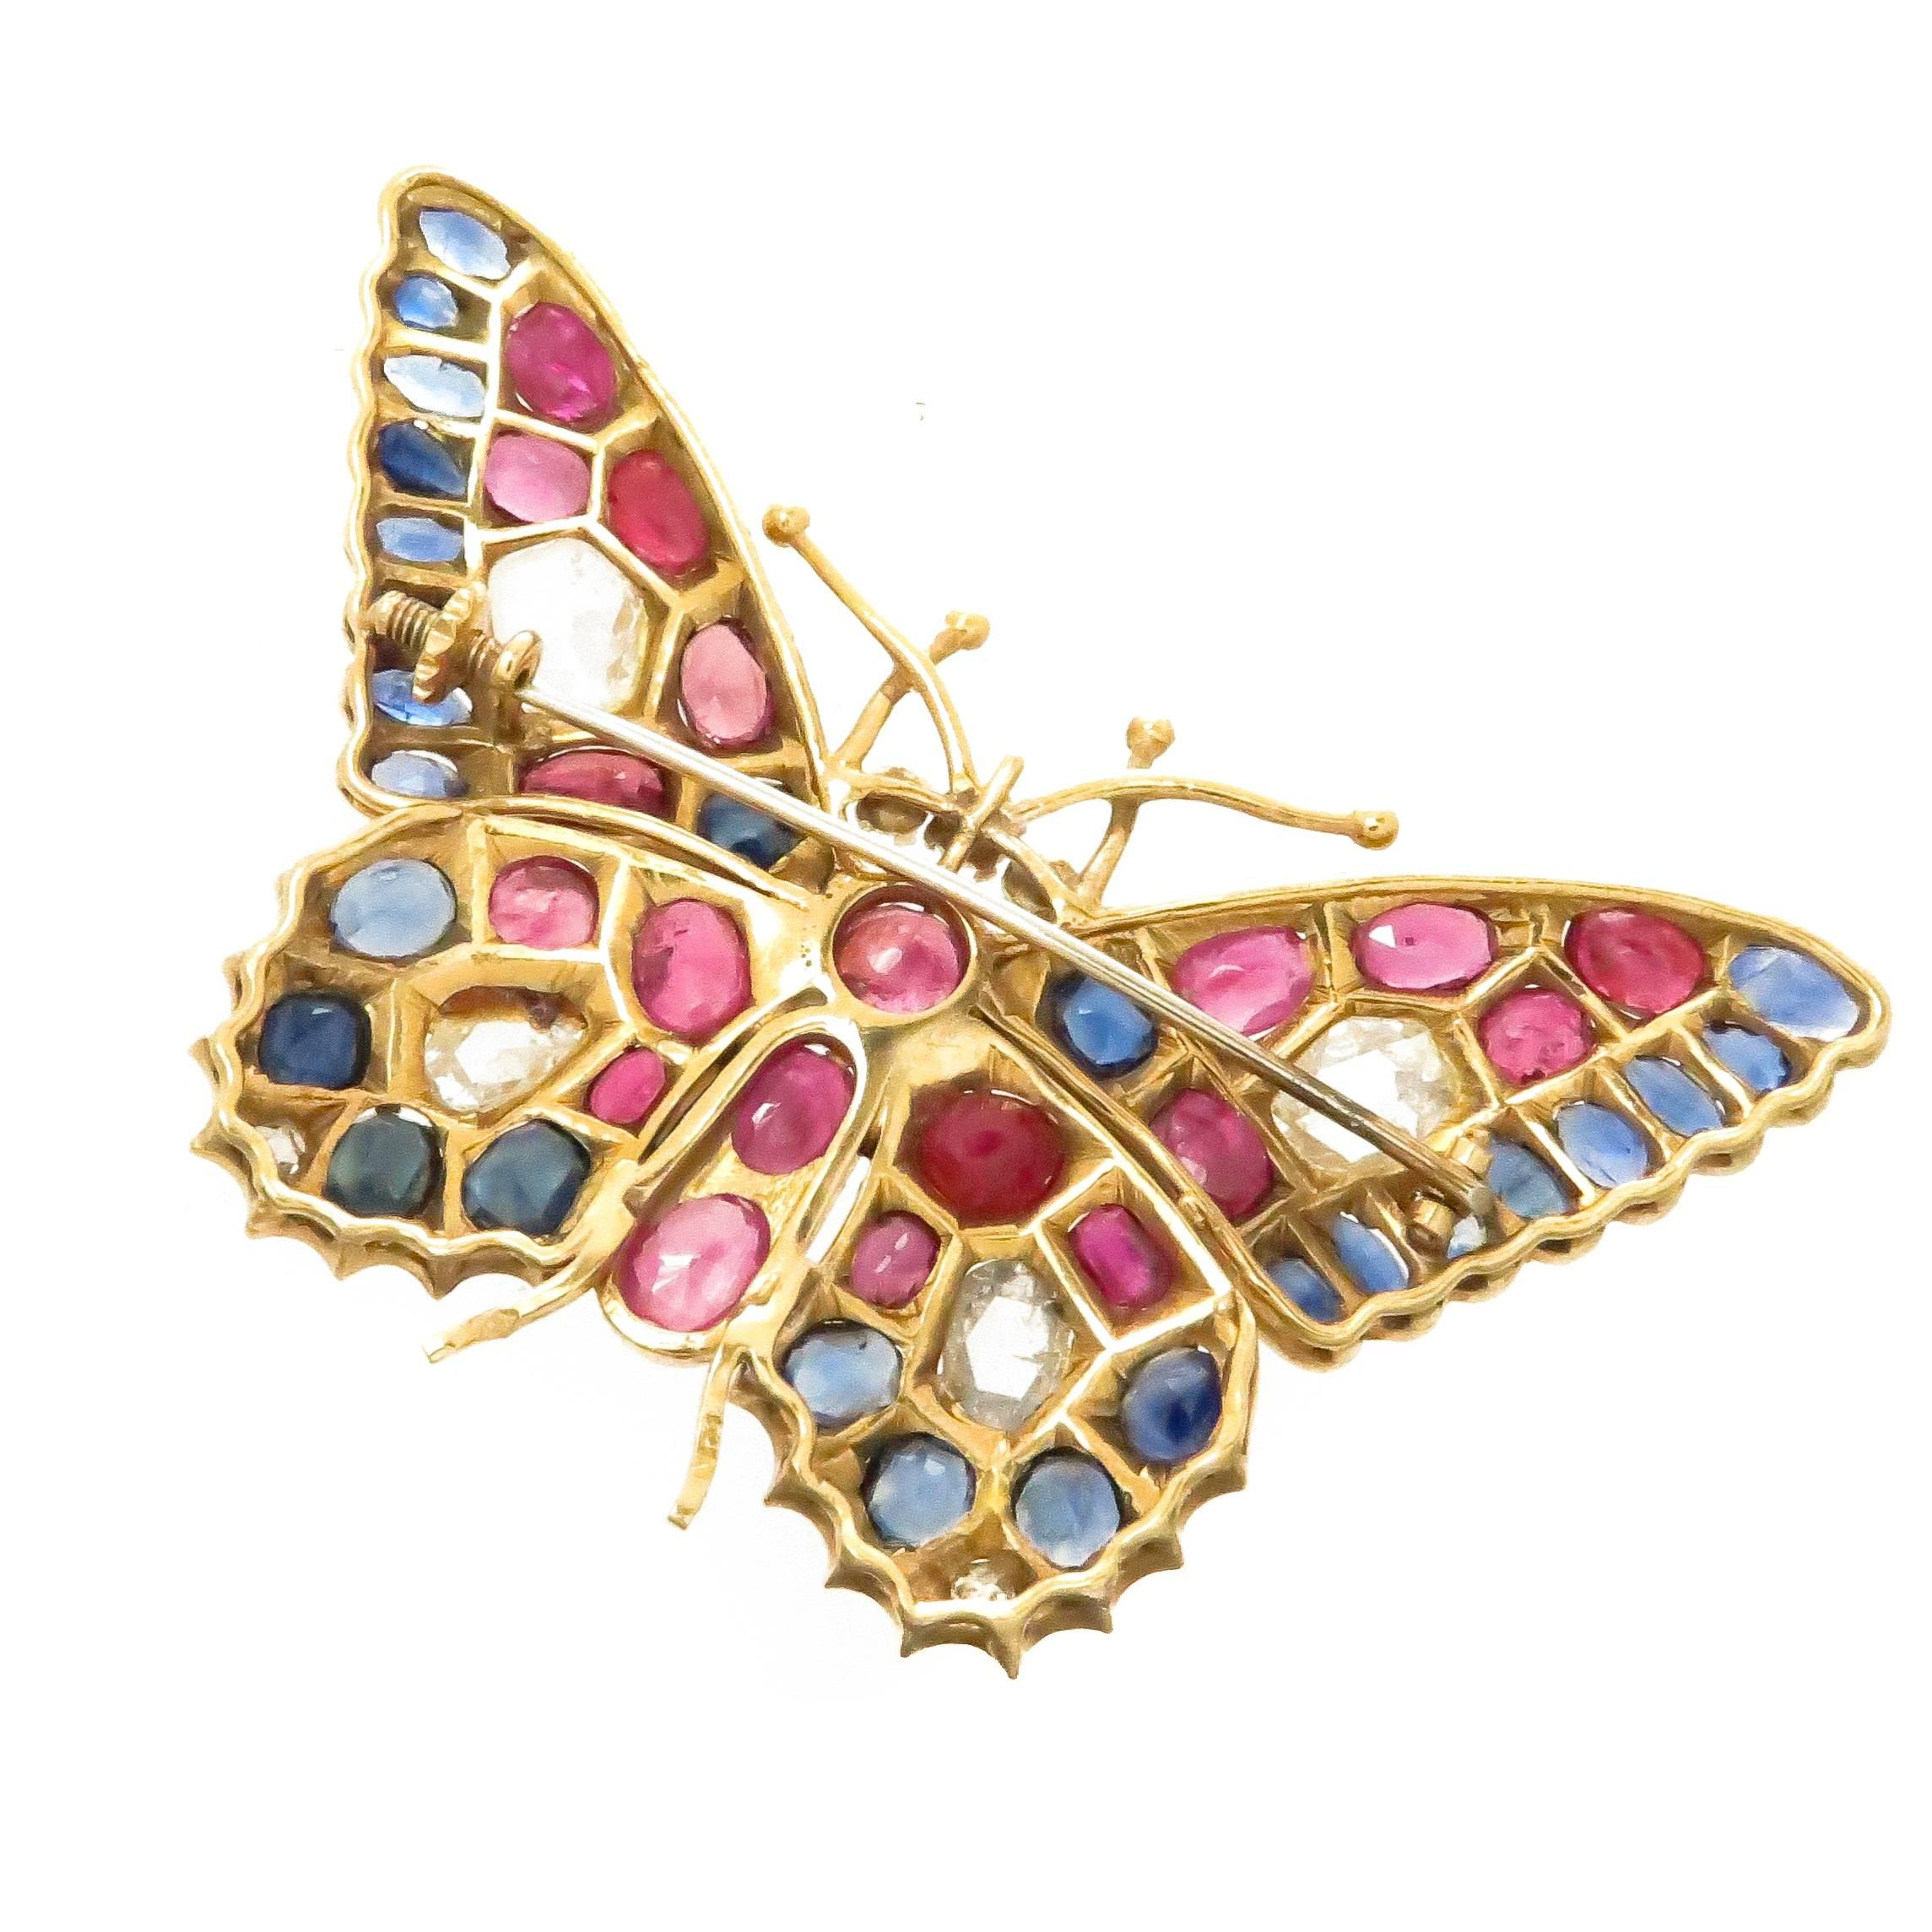 Broche papillon en or jaune 18K, datant de 1920, mesurant 2 5/8 pouces de large sur 1 5/8 pouce. Sertie de 4 gros diamants taillés en rose totalisant environ 3 carats et de plus petits diamants taillés en rose, de rubis, de saphirs et de perles.